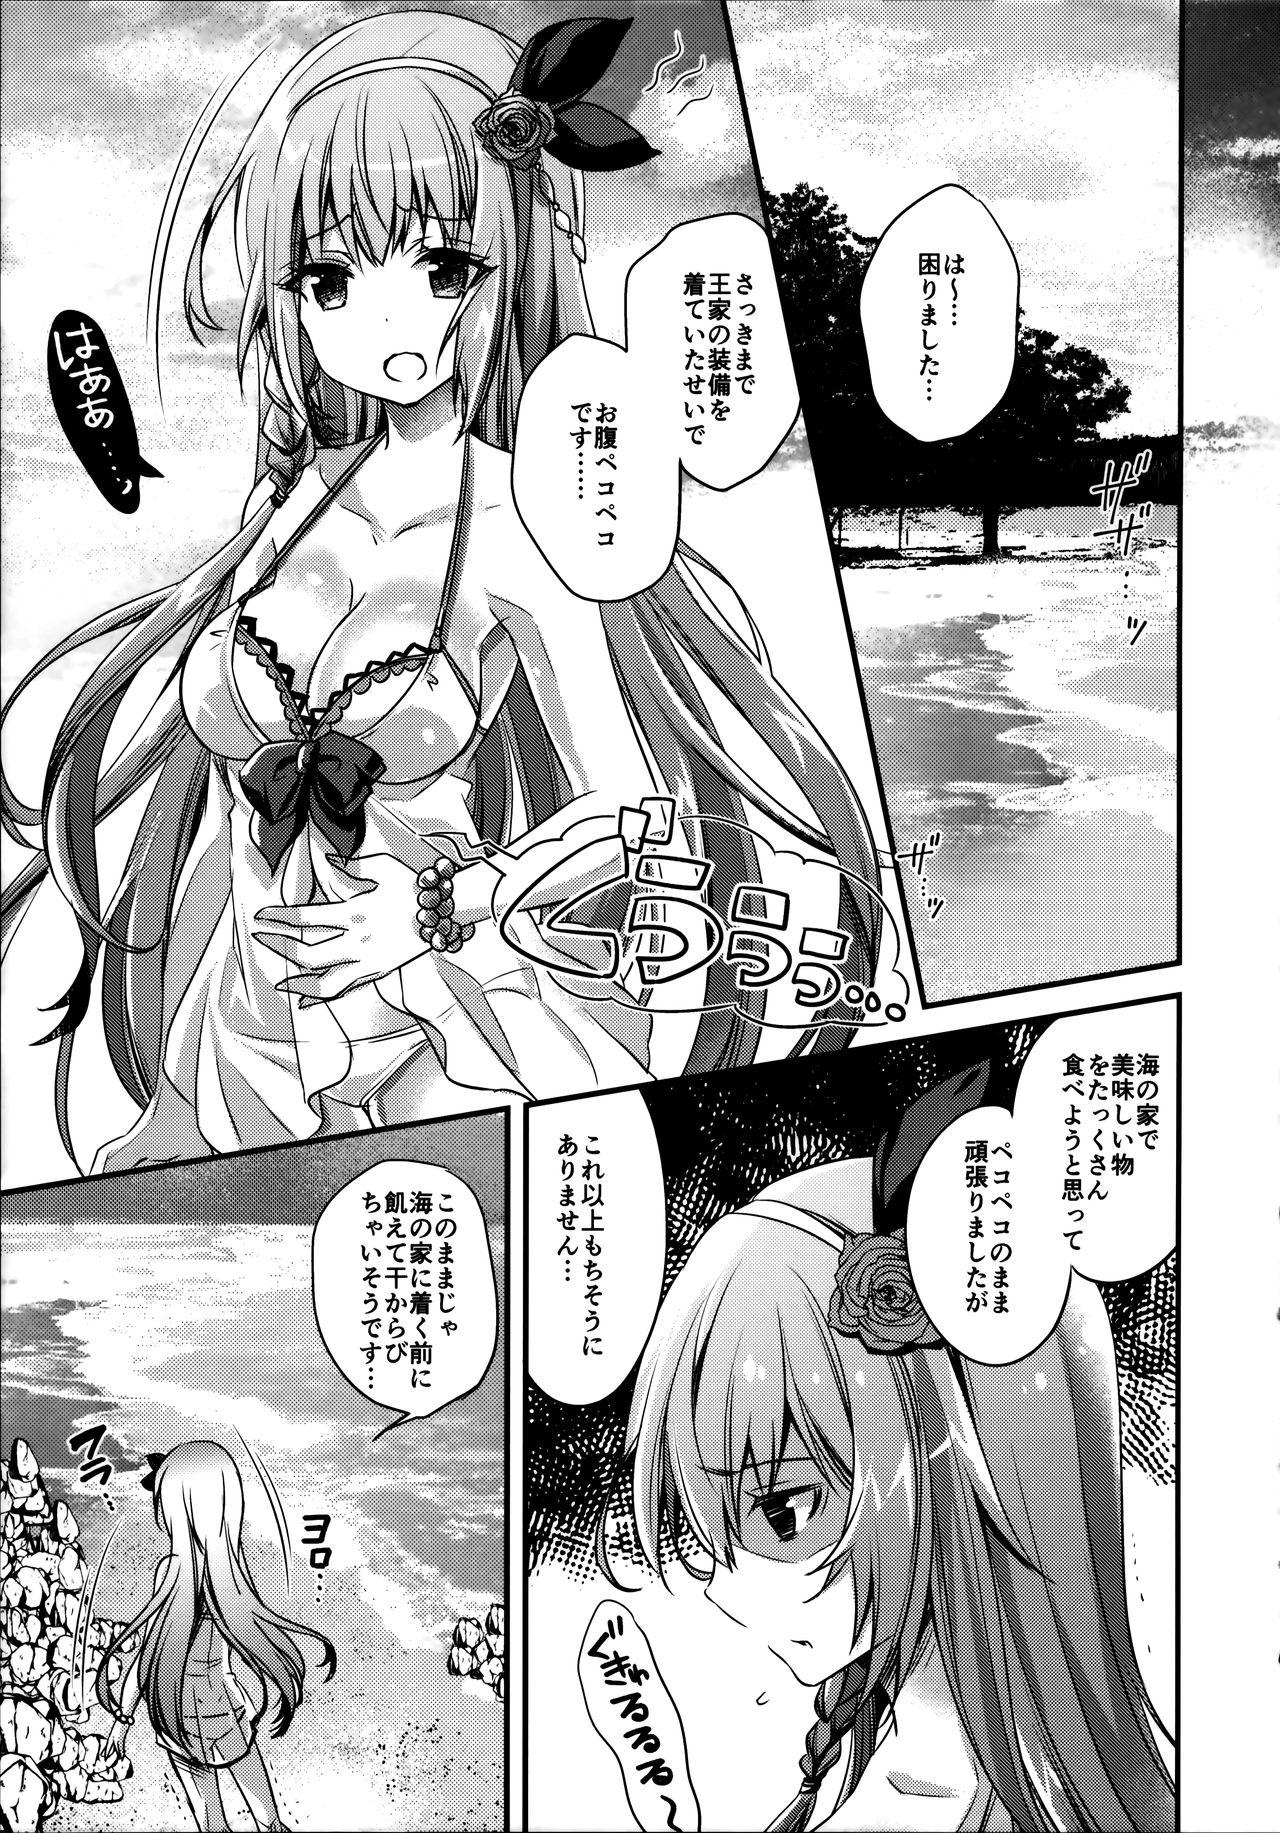 Sucking Mizu Peco-chan ga Monohoshisou na Kao de Kochira o Miteru - Princess connect Gaypawn - Page 4